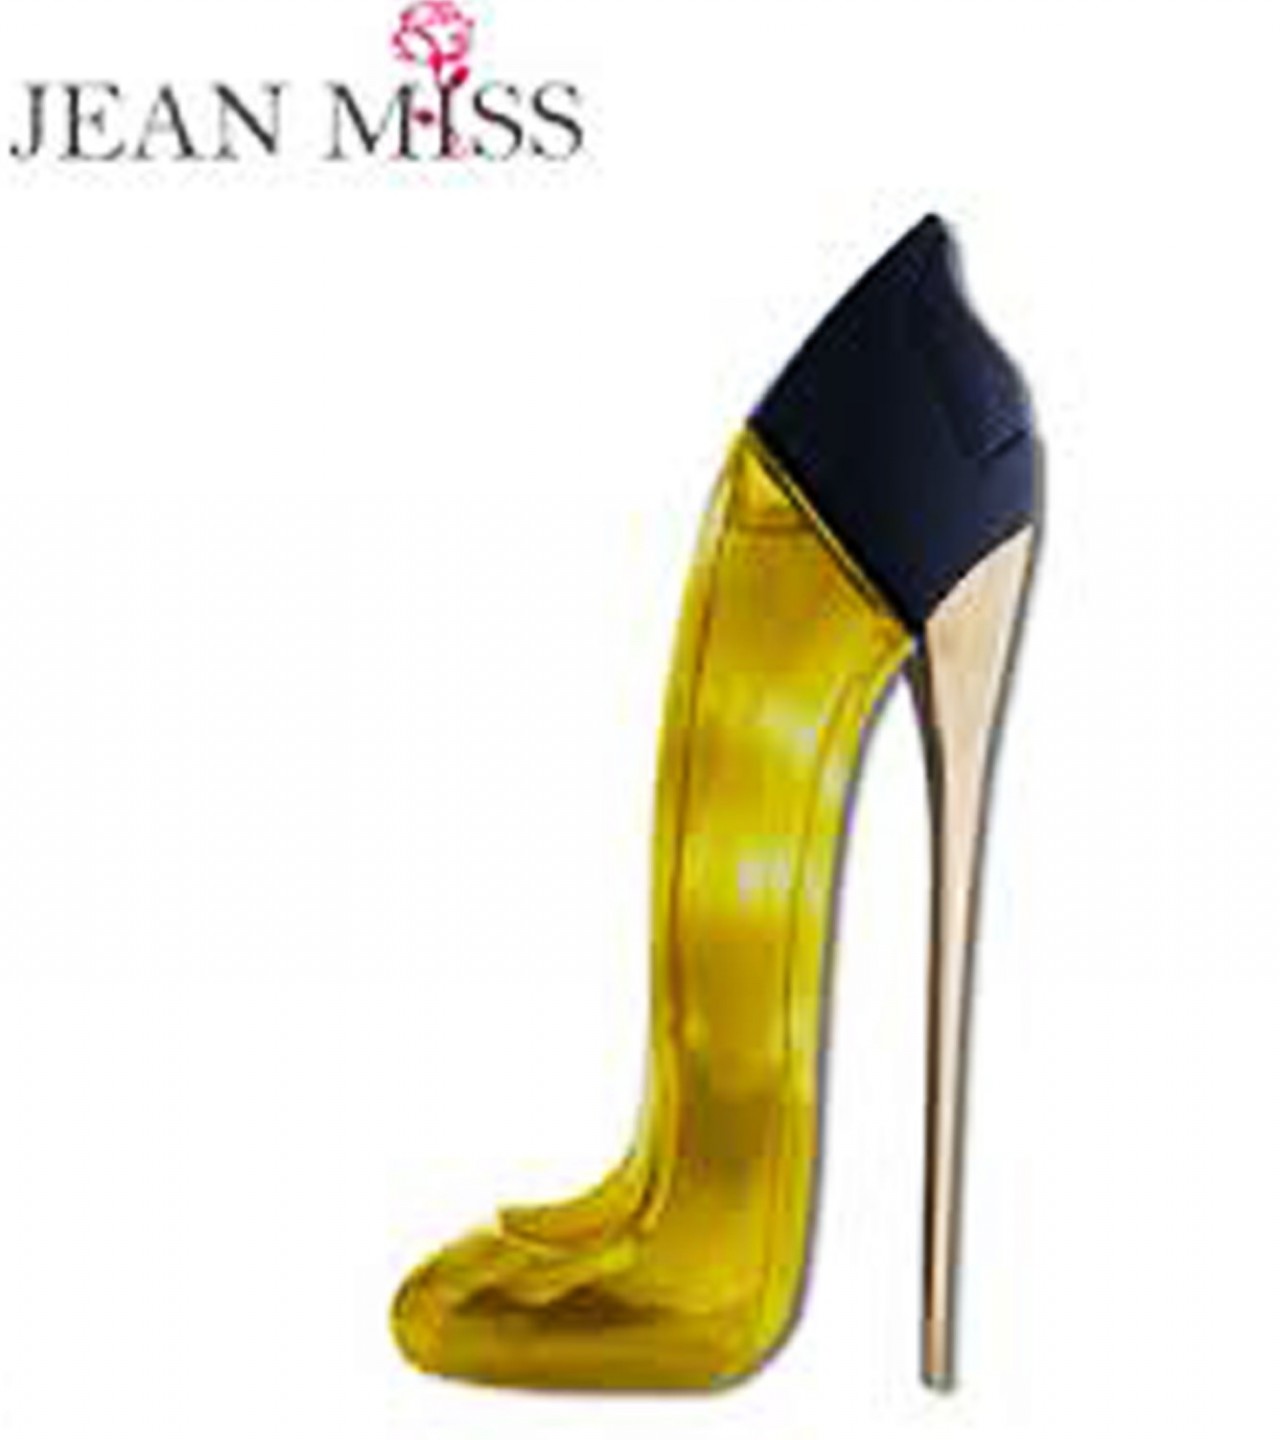 Dream Girl By Jean Miss Perfume For Women - 85 ml - Golden - Sale price -  Buy online in Pakistan - Farosh.pk